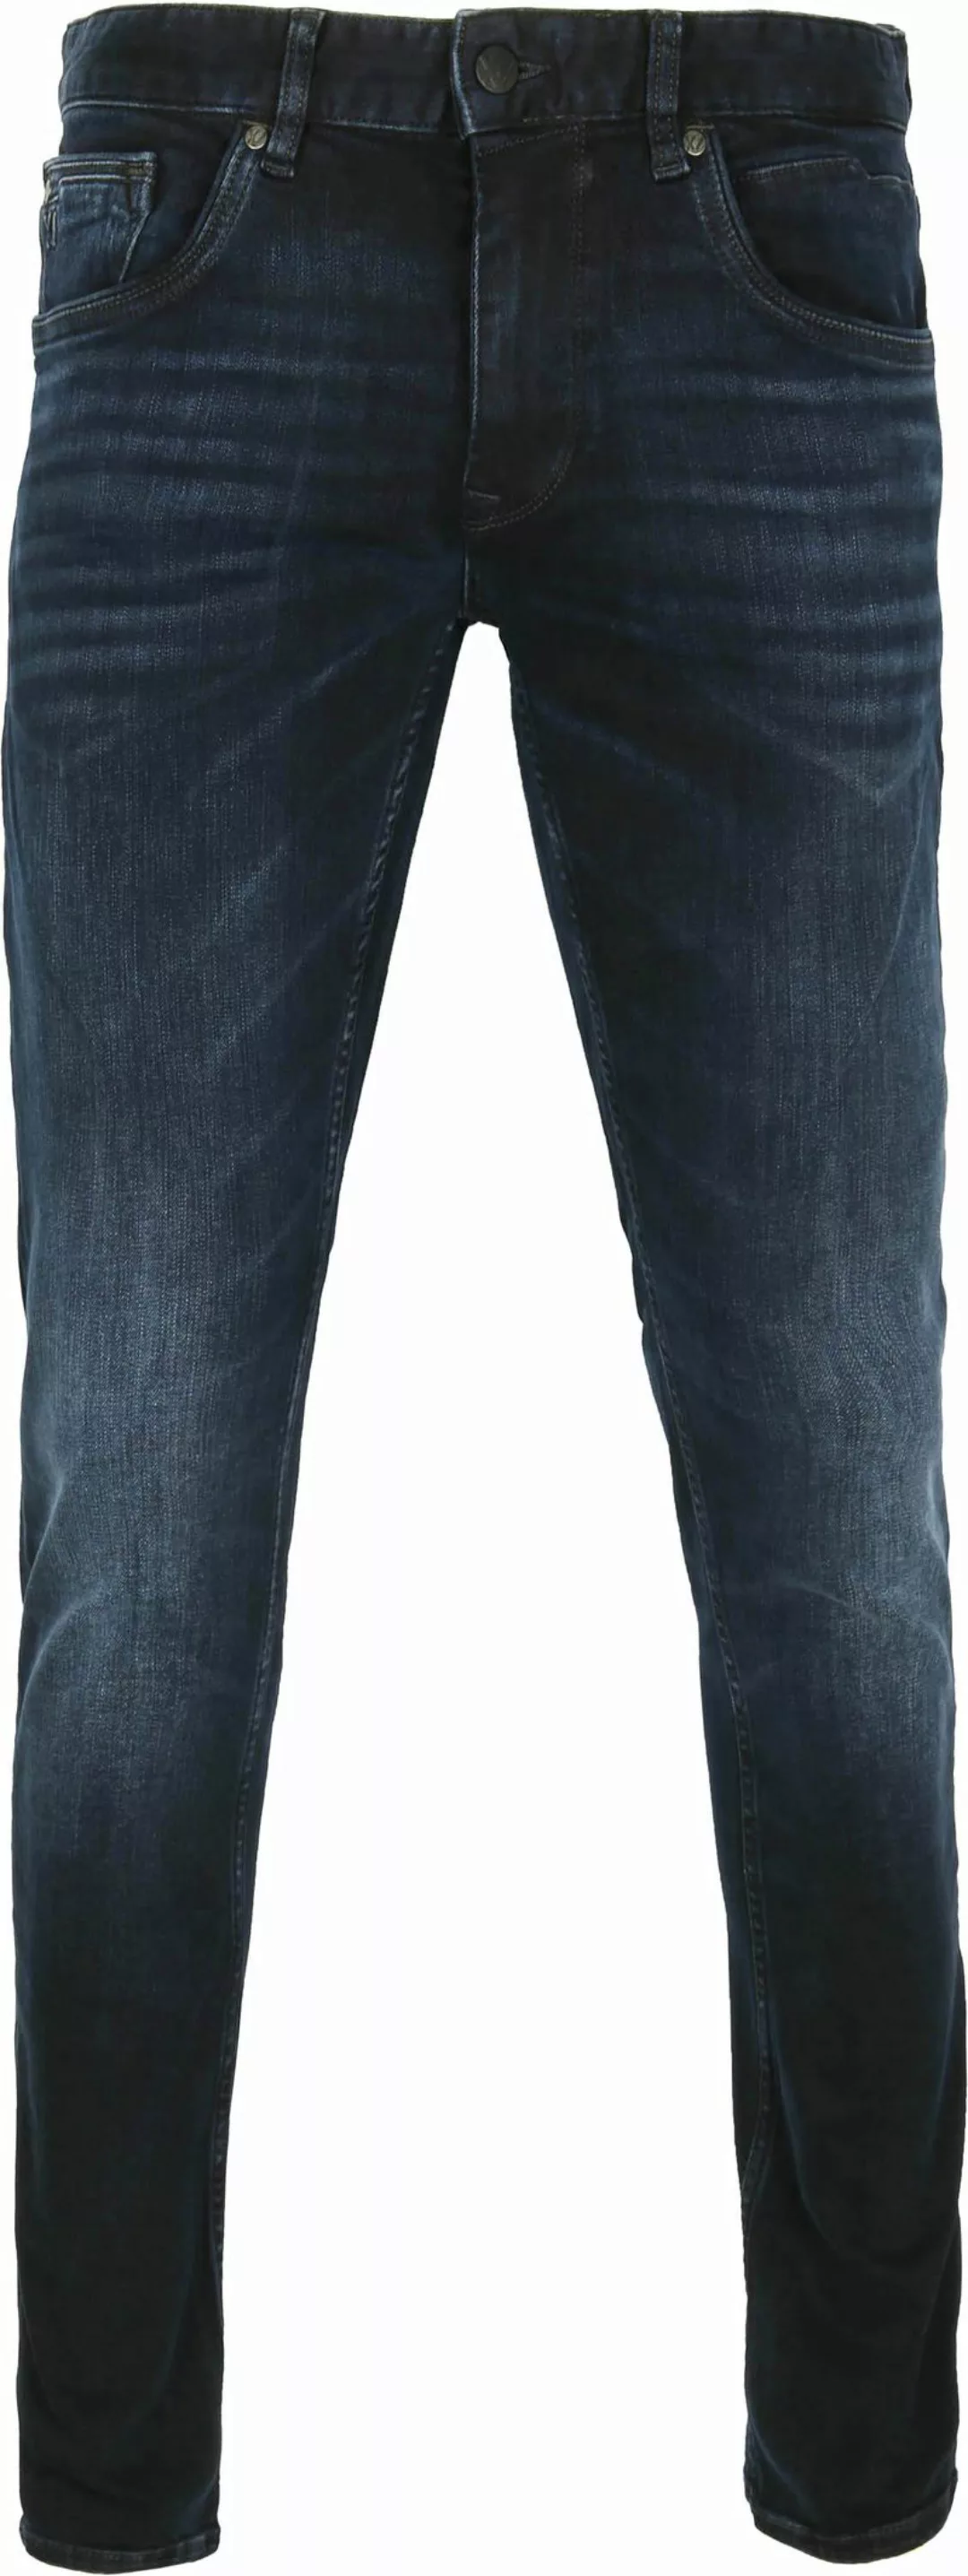 PME Legend XV Jeans Blue Black PTR150 - Größe W 31 - L 32 günstig online kaufen